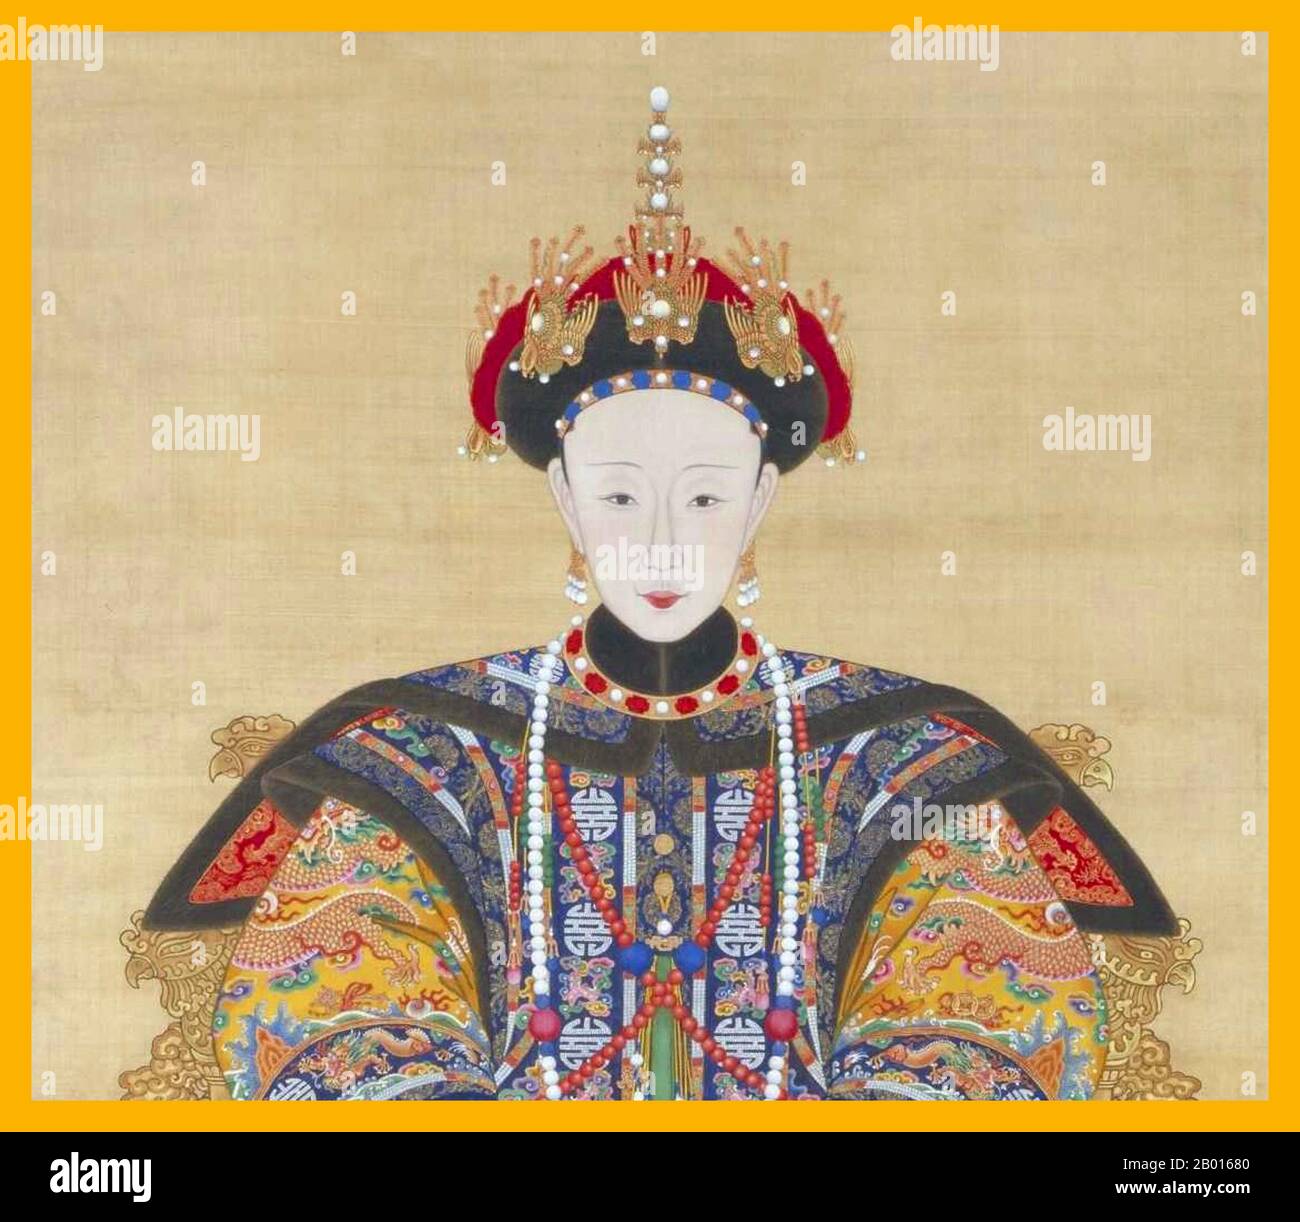 Cina: Imperatrice Xiao Shu Rui (2 ottobre 1760 - 5 marzo 1797), prima imperatrice dell'imperatore Jiaqing. Pittura di Handscroll, c.. 1796-1797. L'imperatrice Xiaoshurui fu il primo imperatrice Consorte dell'imperatore Jiaqing della dinastia Qing. Affollato dalla piana di Manchu White Banner Hitara Clan, Lady Hitara sposò Yongyan (il futuro Imperatore Jiaqing) nel 1774, durante il regno dell'Imperatore Qianlong. Divenne consorte imperatrice nel 1796, quando l'imperatore Qianlong abdicò a favore di Yongyan, ma morì un anno dopo. Suo figlio Minning sarebbe diventato l'imperatore Daoguang nel 1820. Foto Stock